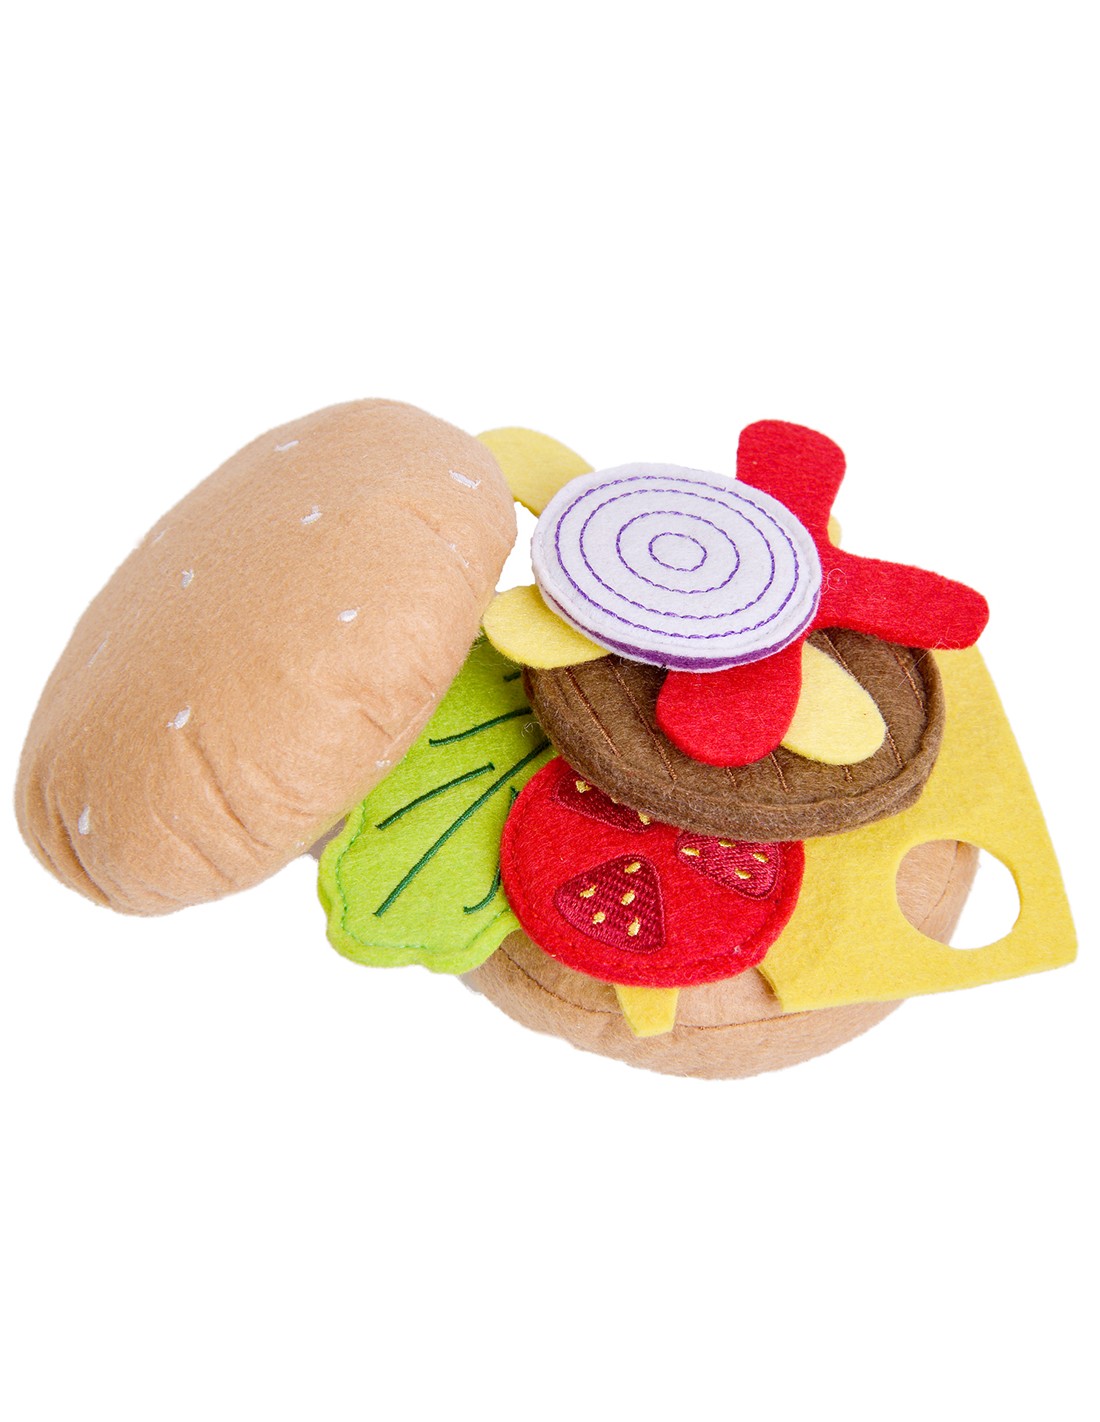 tekstilen-hamburger-za-igra-674601079.jpg